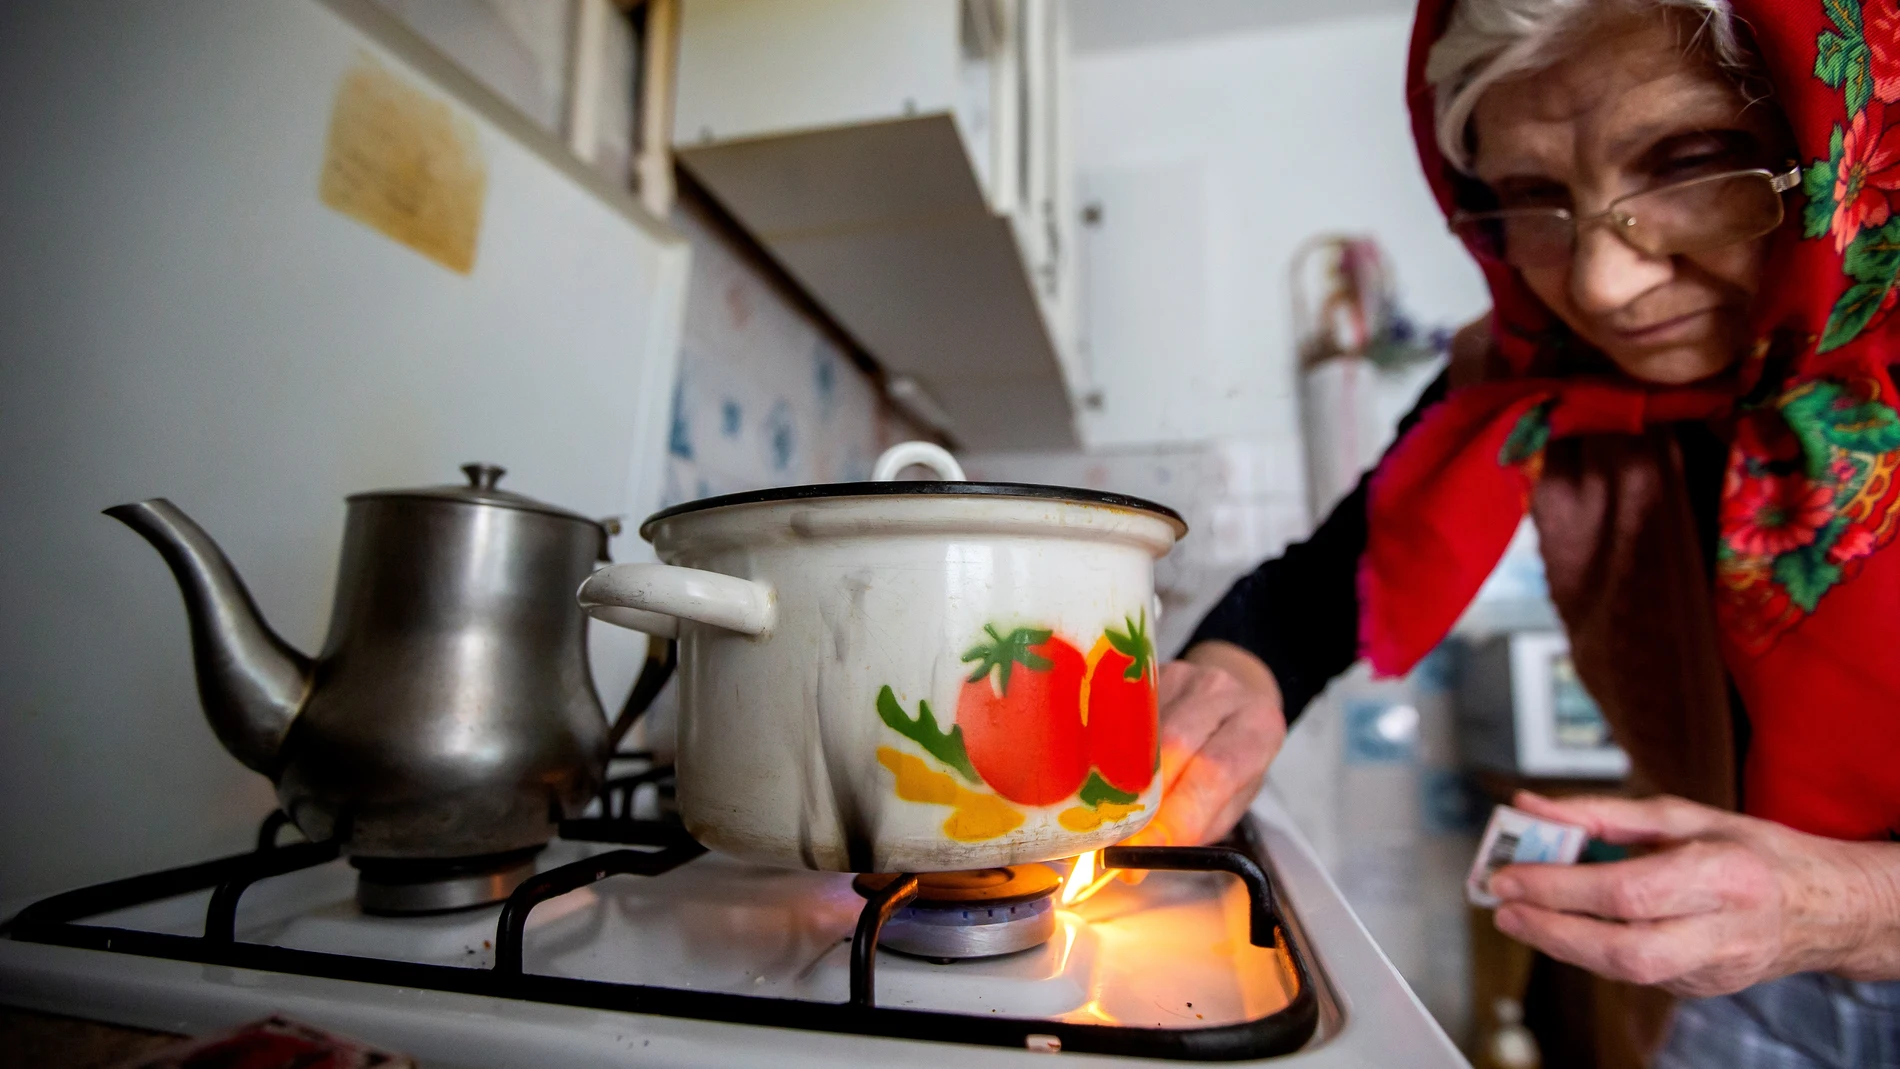 Chisinau. Una anciana enciende el gas durante una de las mayores crisis energéticas de Moldavia en los últimos años, donde el gas ha alcanzado el precio de 646 dólares por metro cúbico.